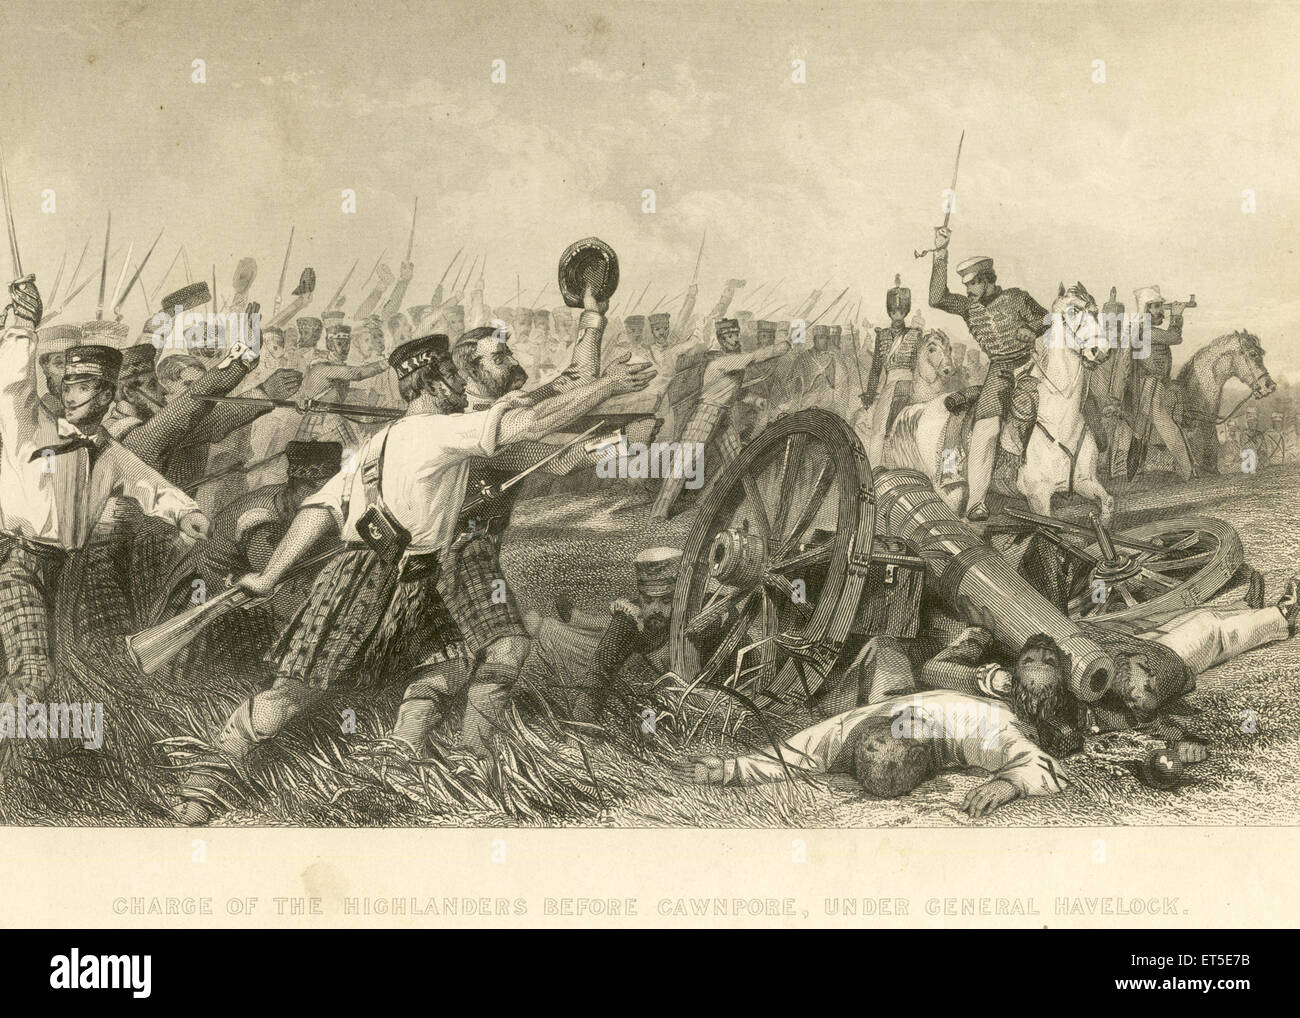 Militär und Gemeinschaft Meuterei Ansichten Ihres Highlanders vor Chwnpore unter General Havelock; Kanpur; Uttar Pradesh; Indien Stockfoto